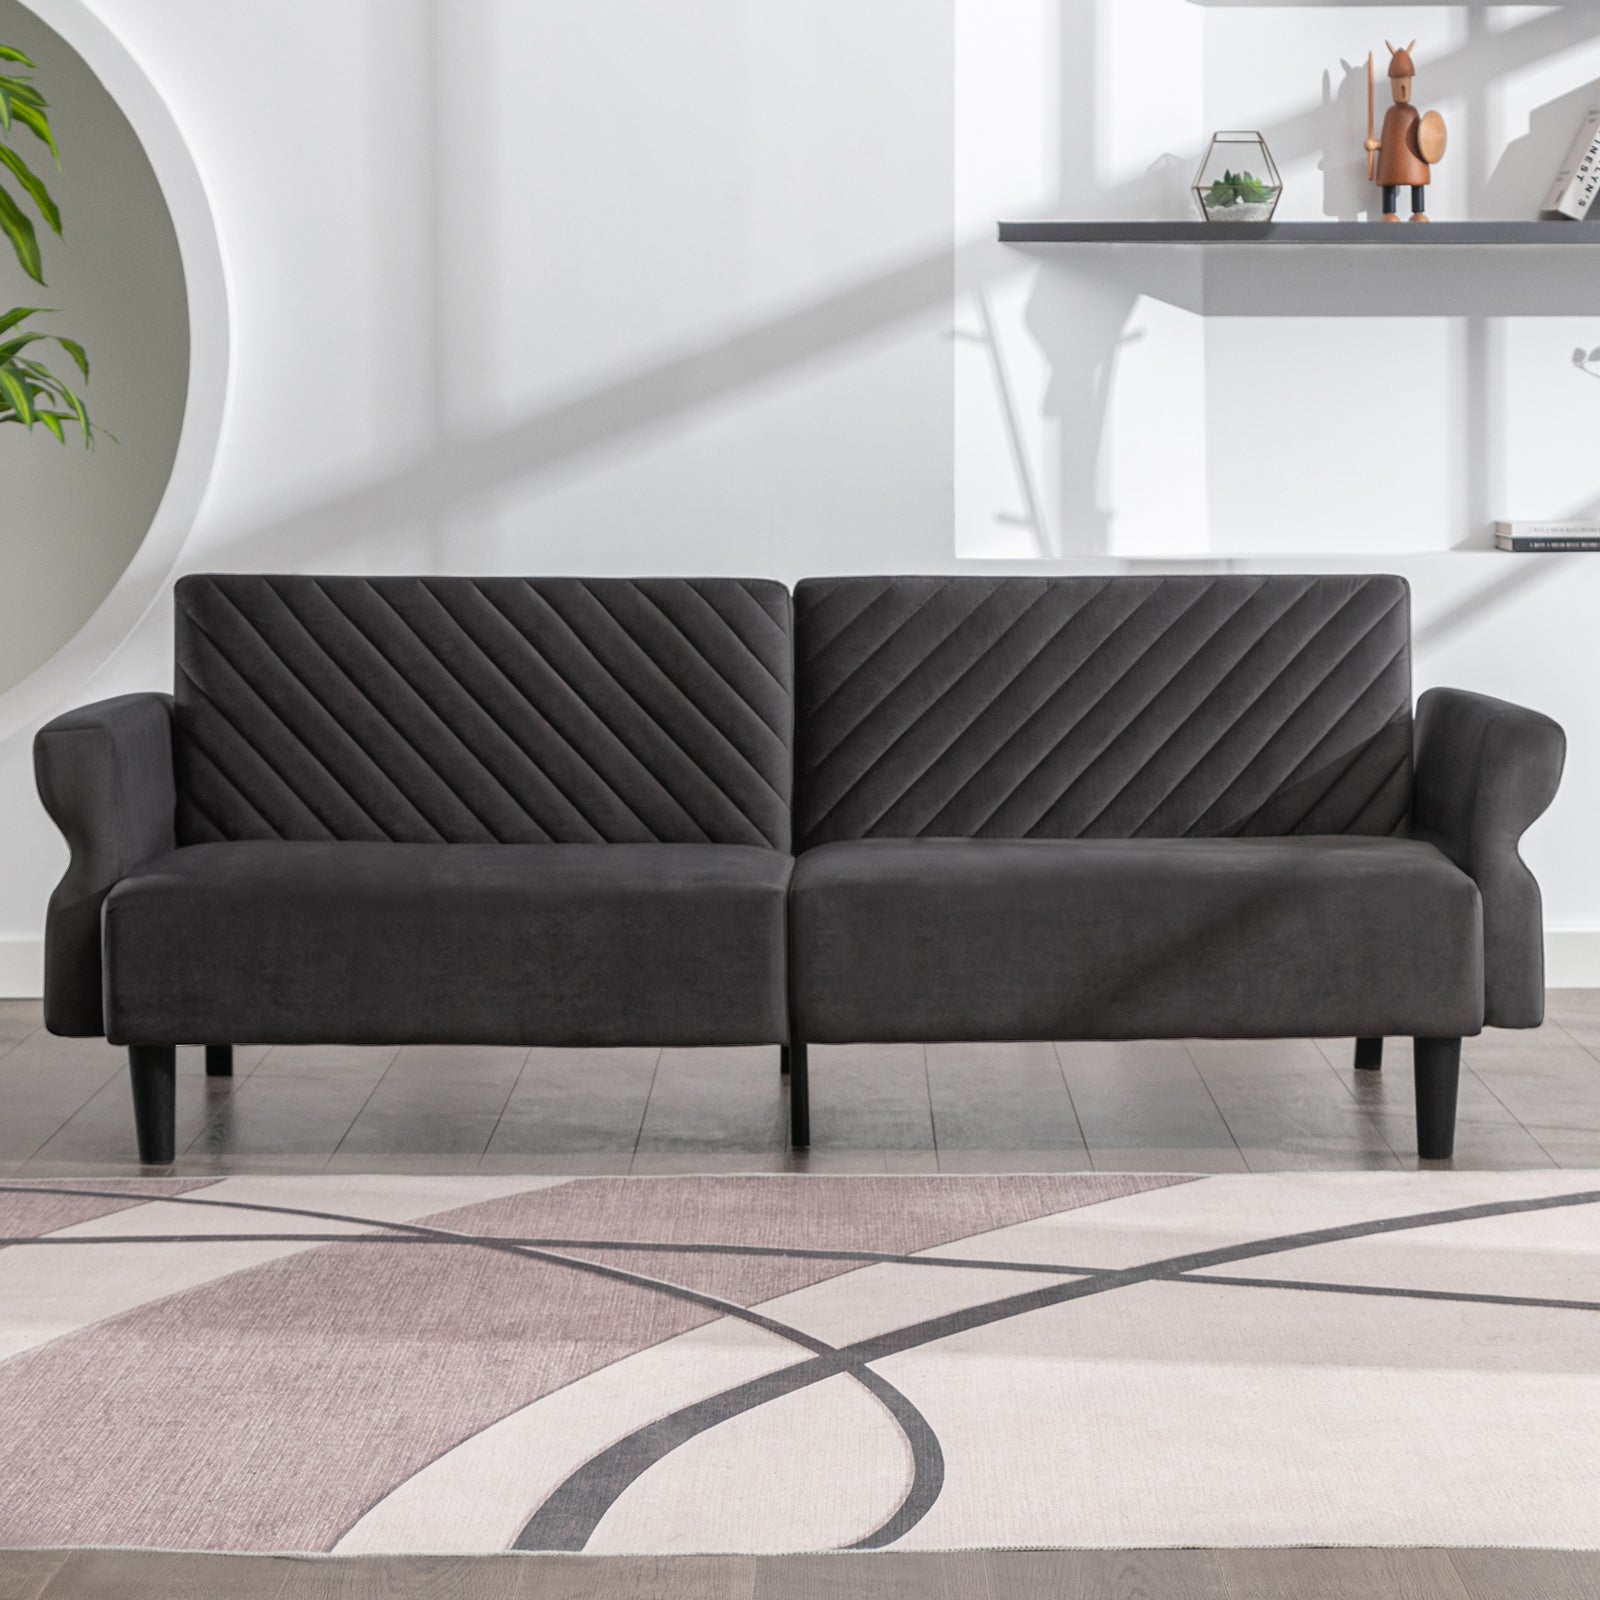 Mjkone Mid-Century Convertible Futon Sofa Bed Sleeper Loveseat